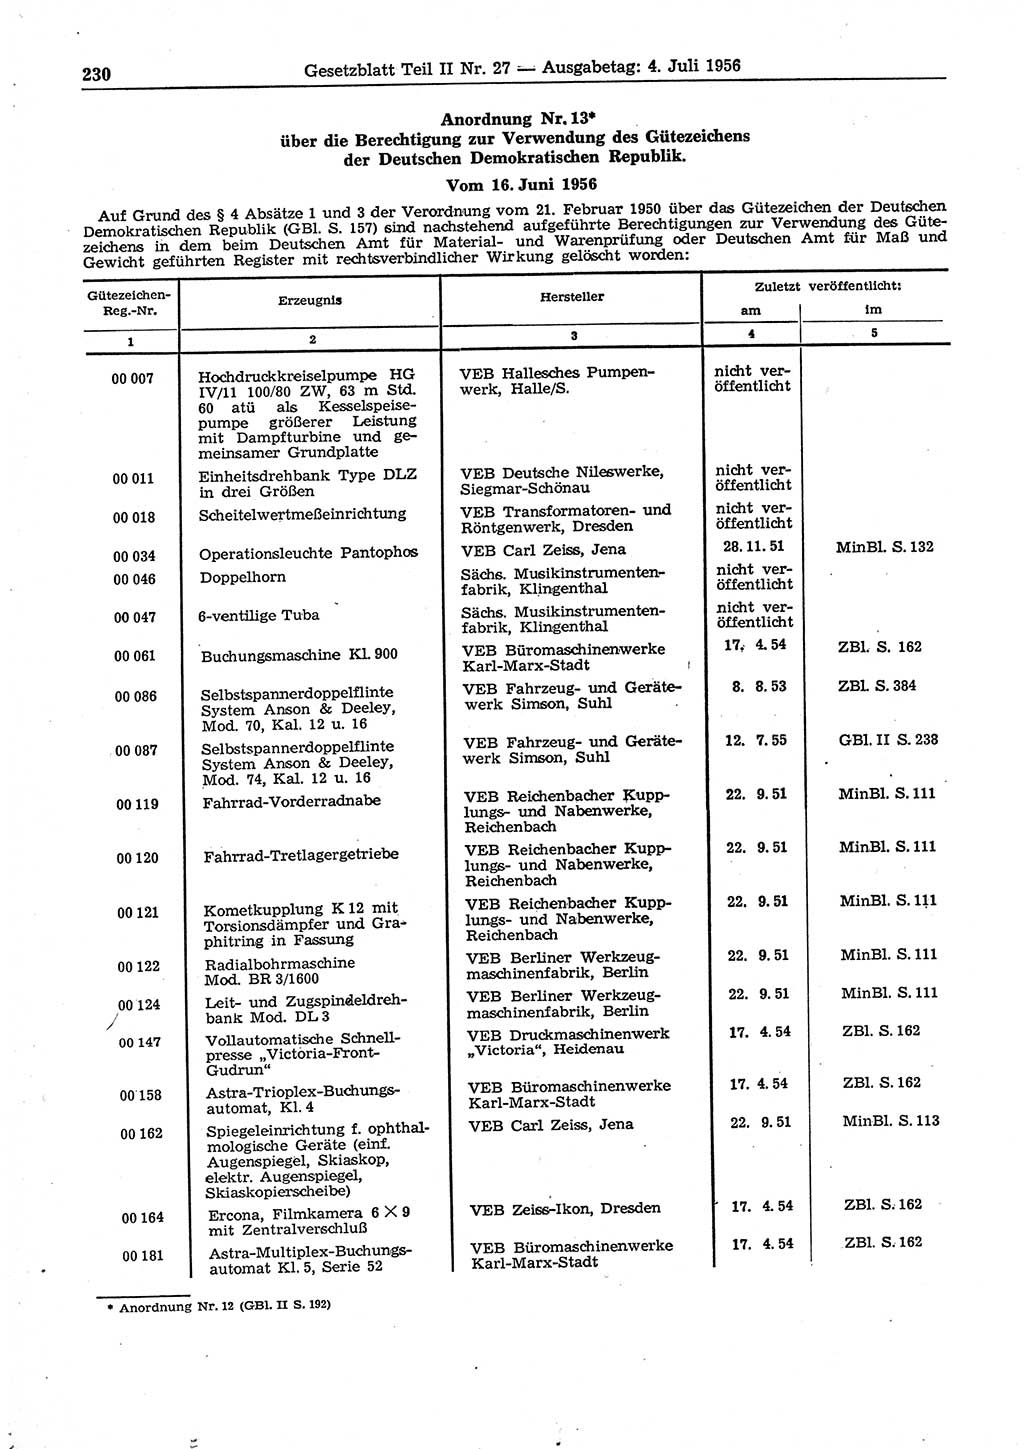 Gesetzblatt (GBl.) der Deutschen Demokratischen Republik (DDR) Teil ⅠⅠ 1956, Seite 230 (GBl. DDR ⅠⅠ 1956, S. 230)